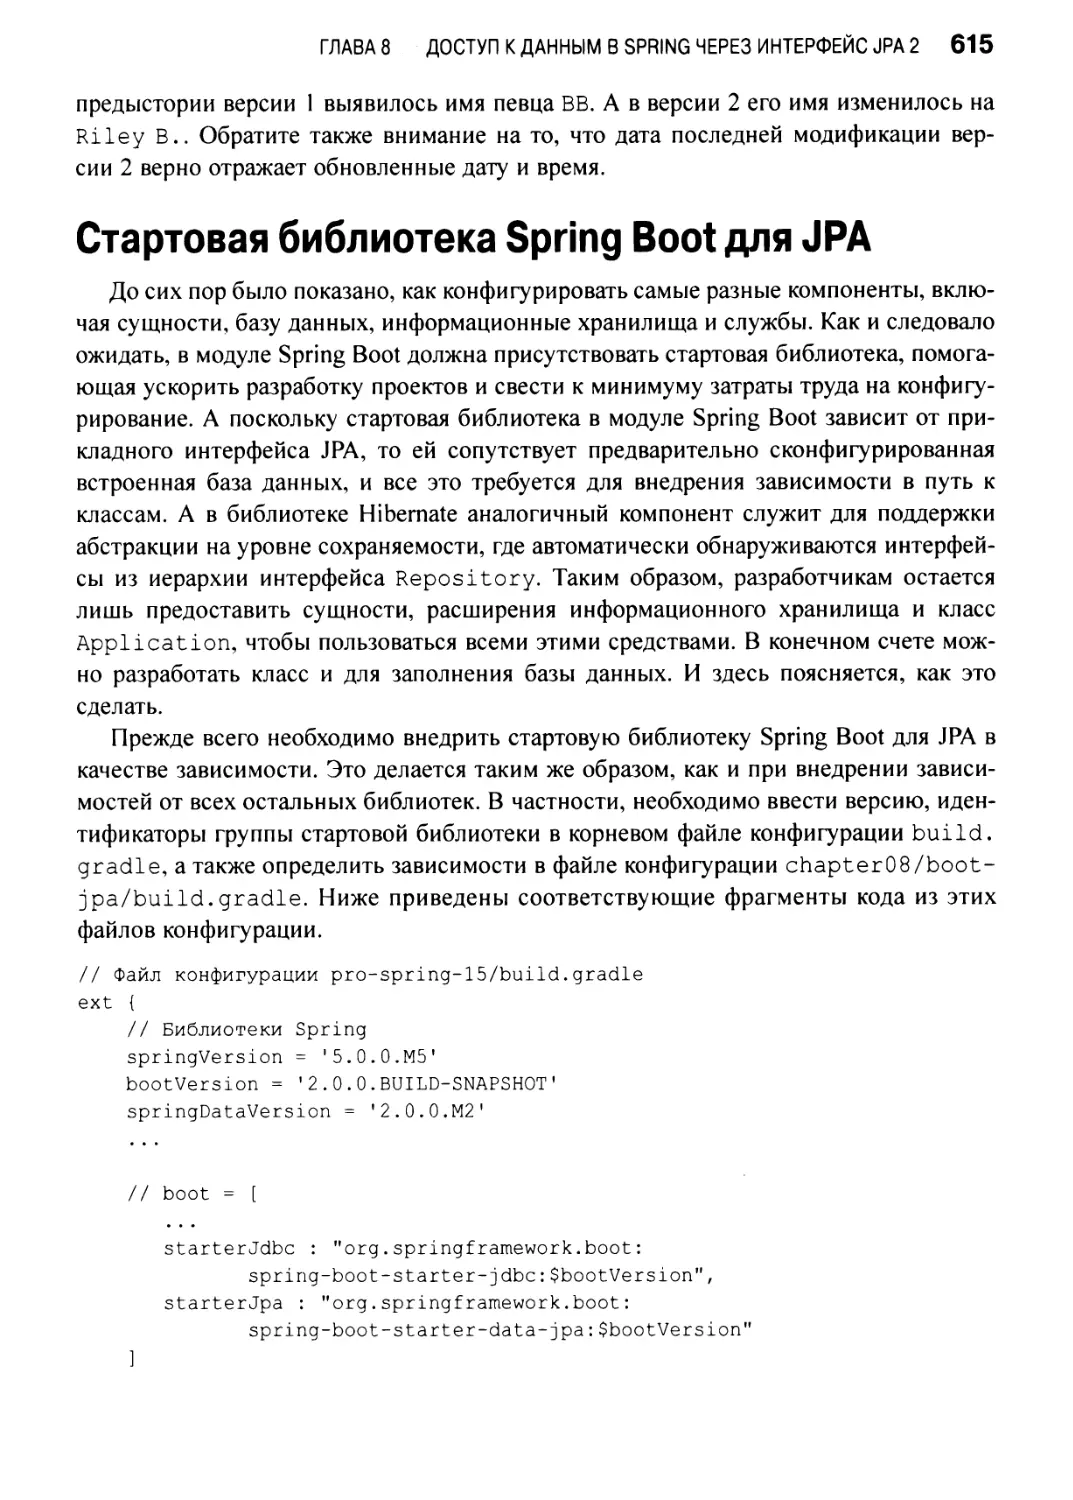 Стартовая библиотека Spring Boot для JPA